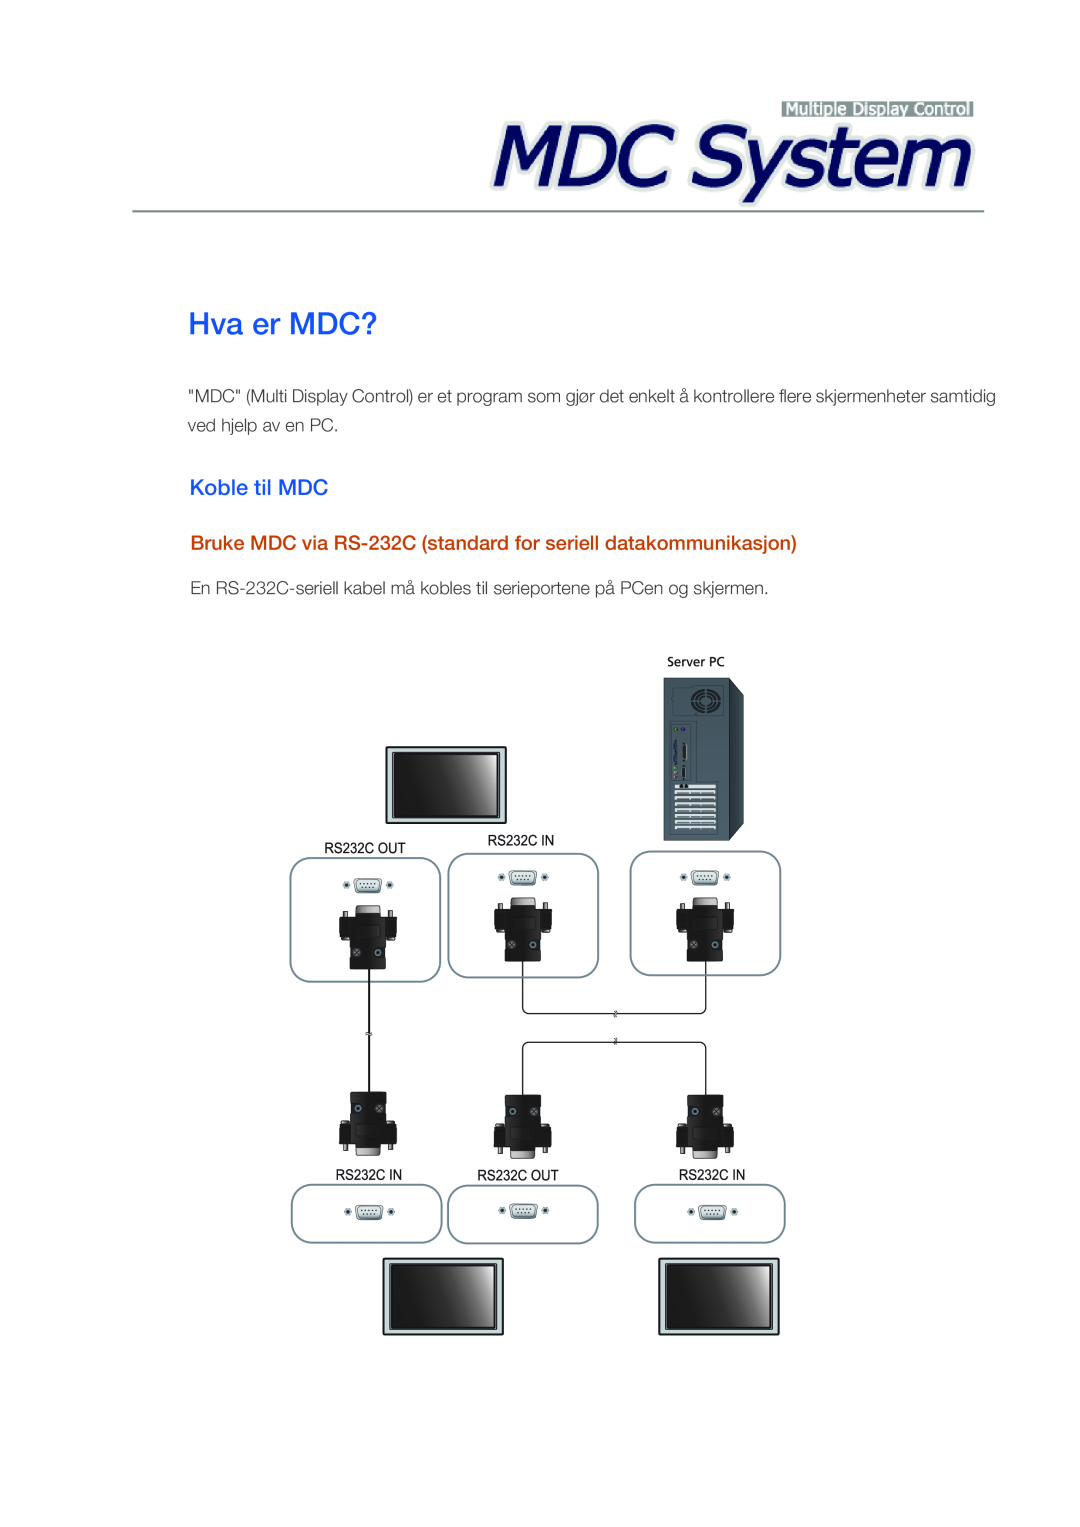 Samsung LH46CRPMBD/EN manual Hva er MDC?, Koble til MDC, Bruke MDC via RS-232C standard for seriell datakommunikasjon 